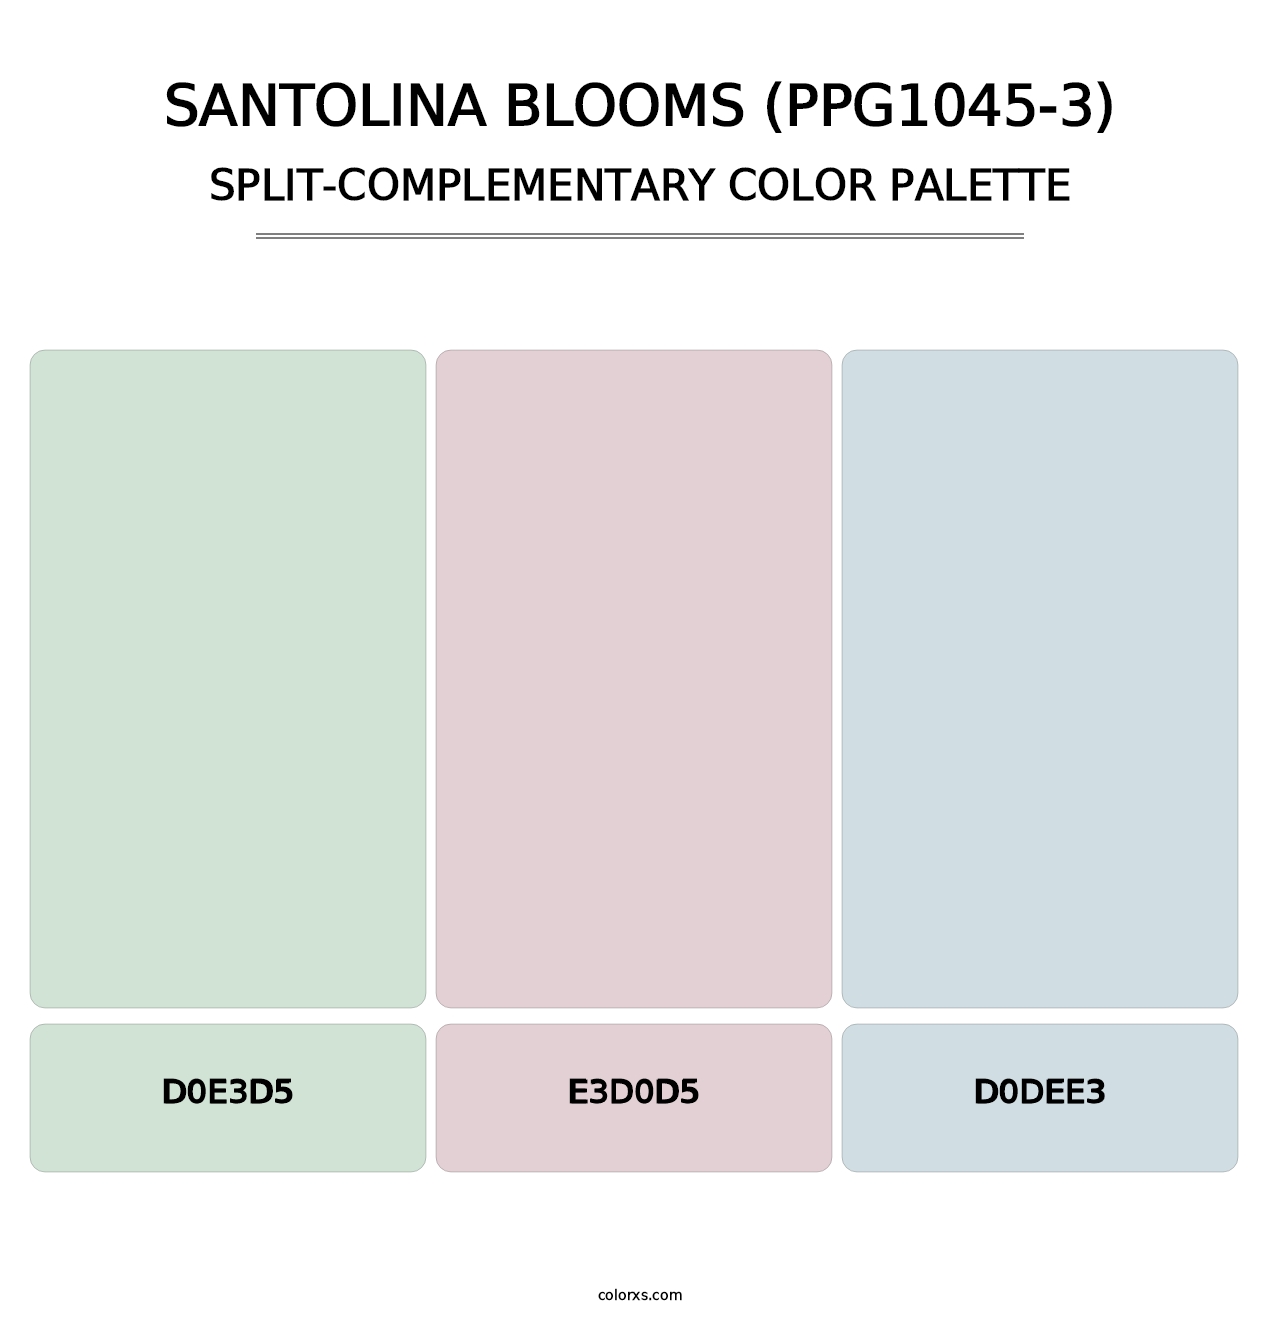 Santolina Blooms (PPG1045-3) - Split-Complementary Color Palette